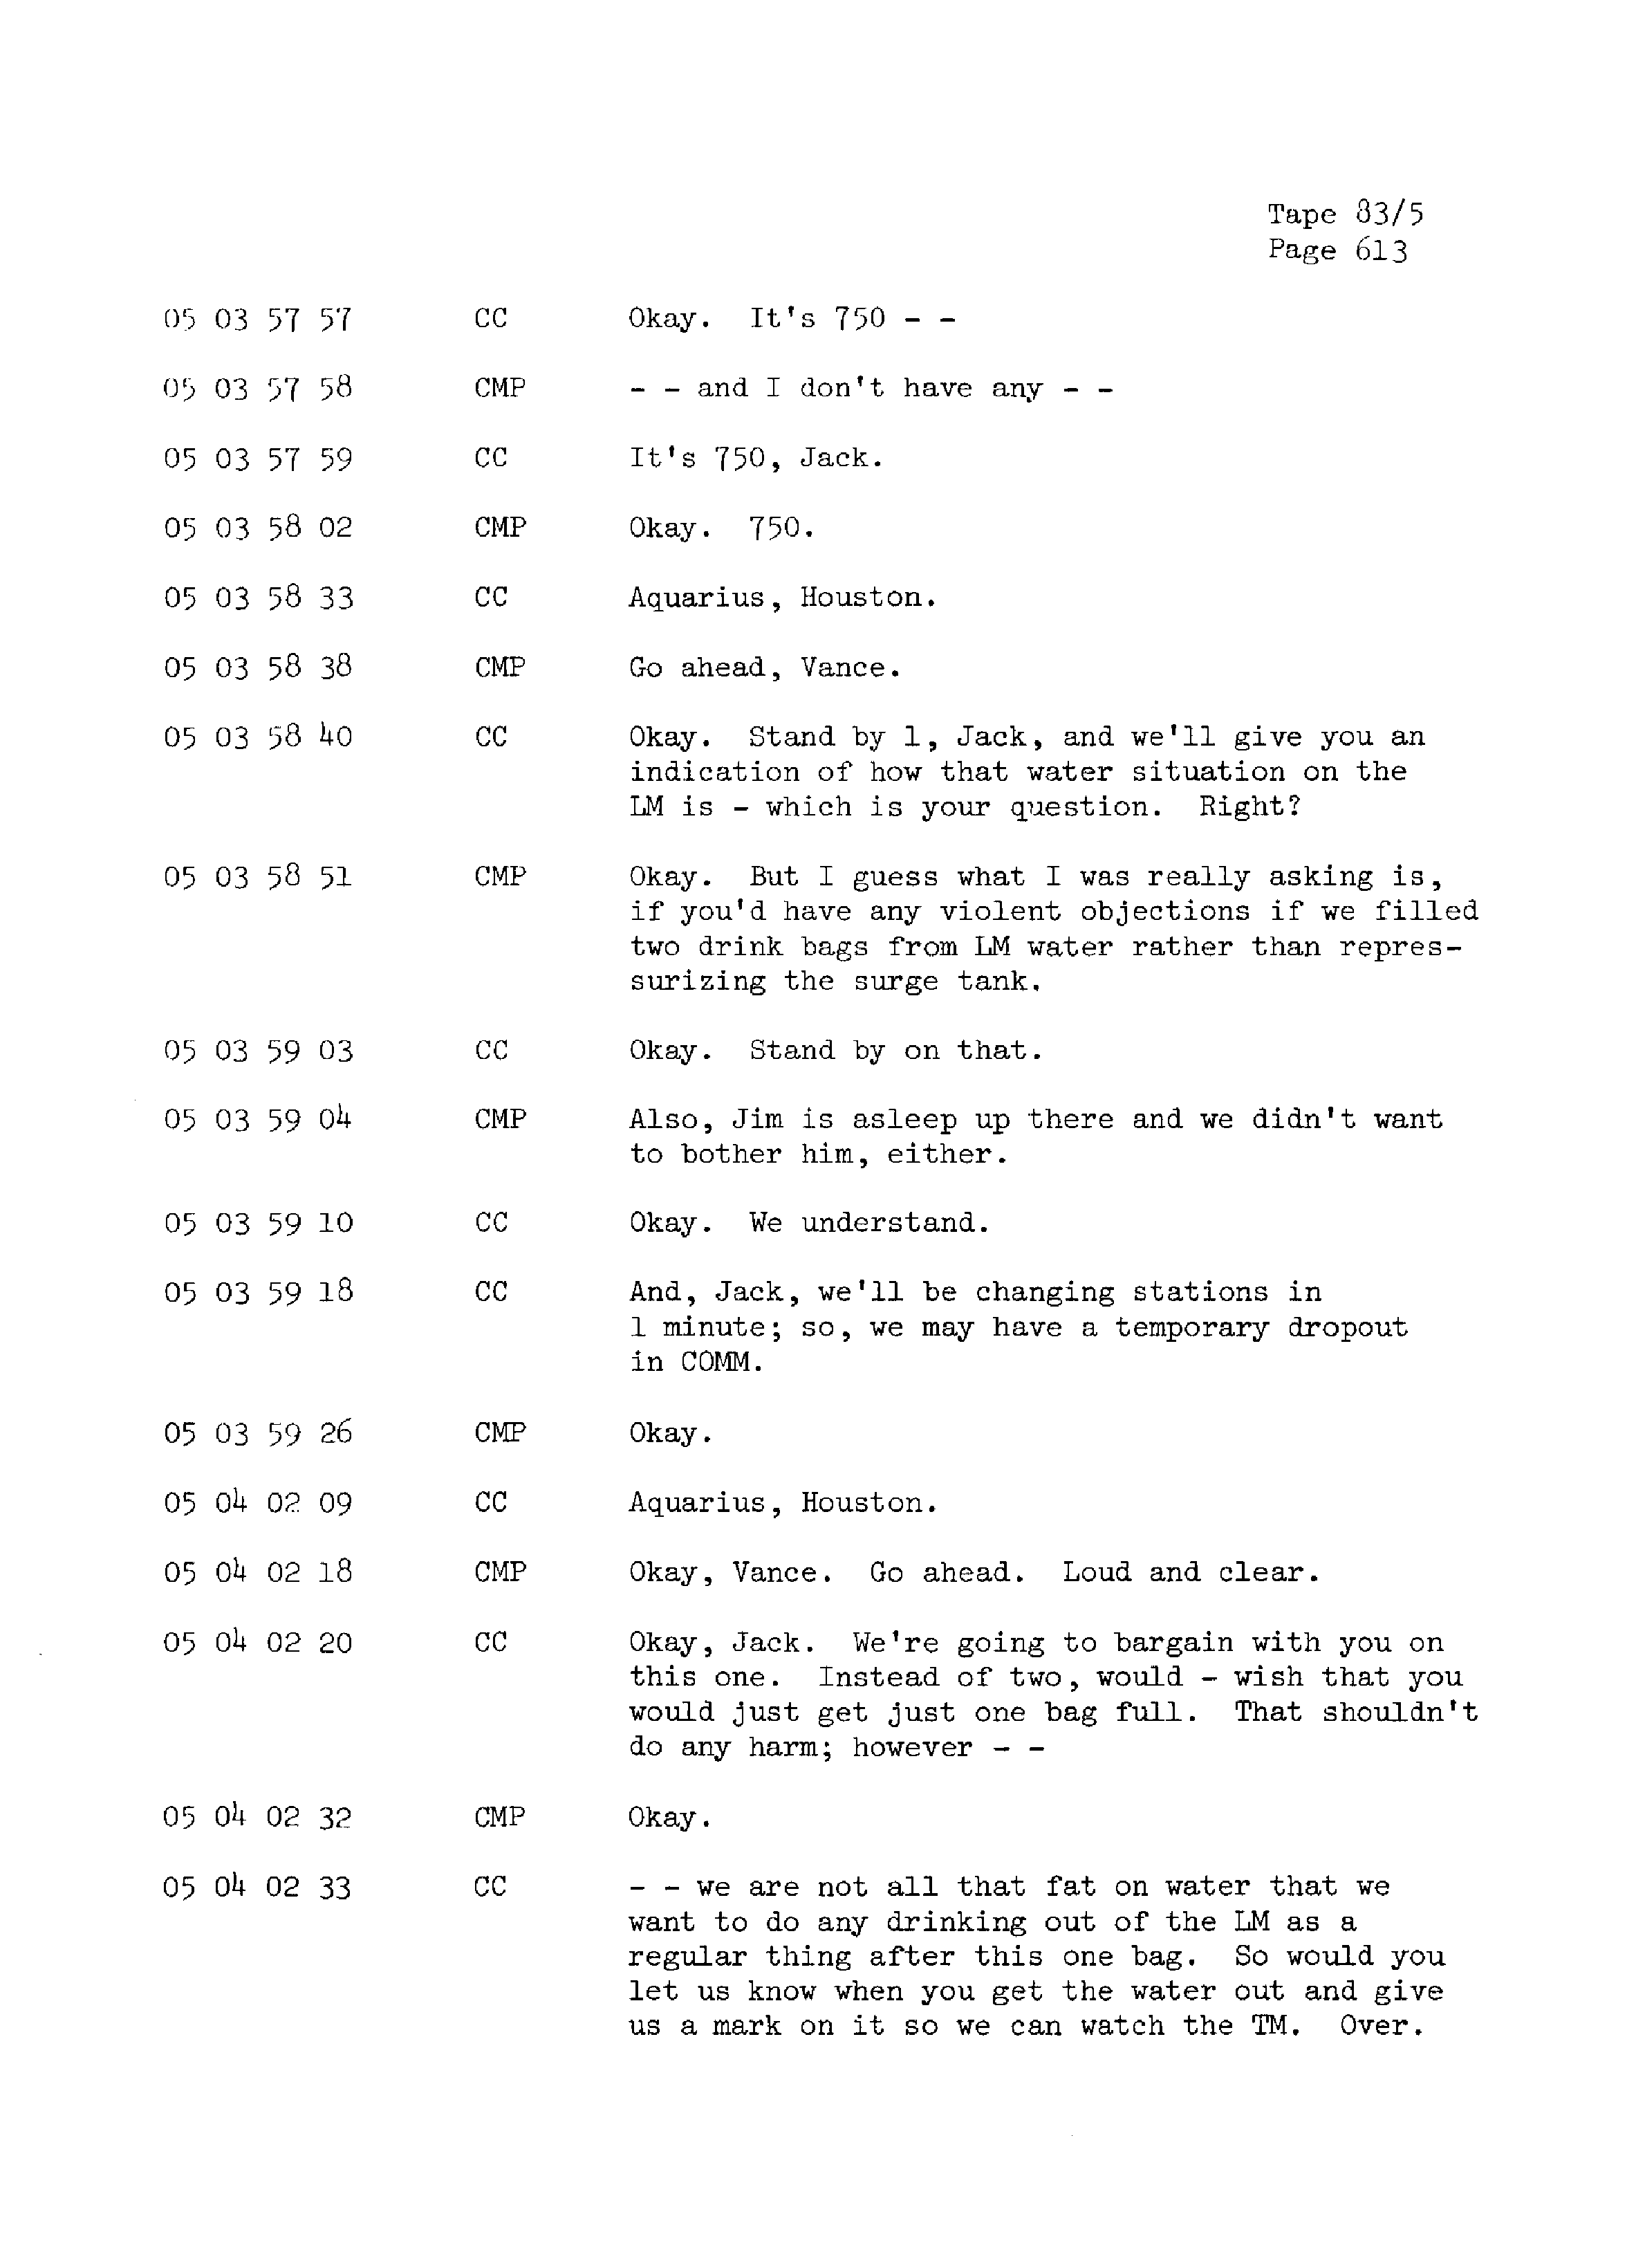 Page 620 of Apollo 13’s original transcript